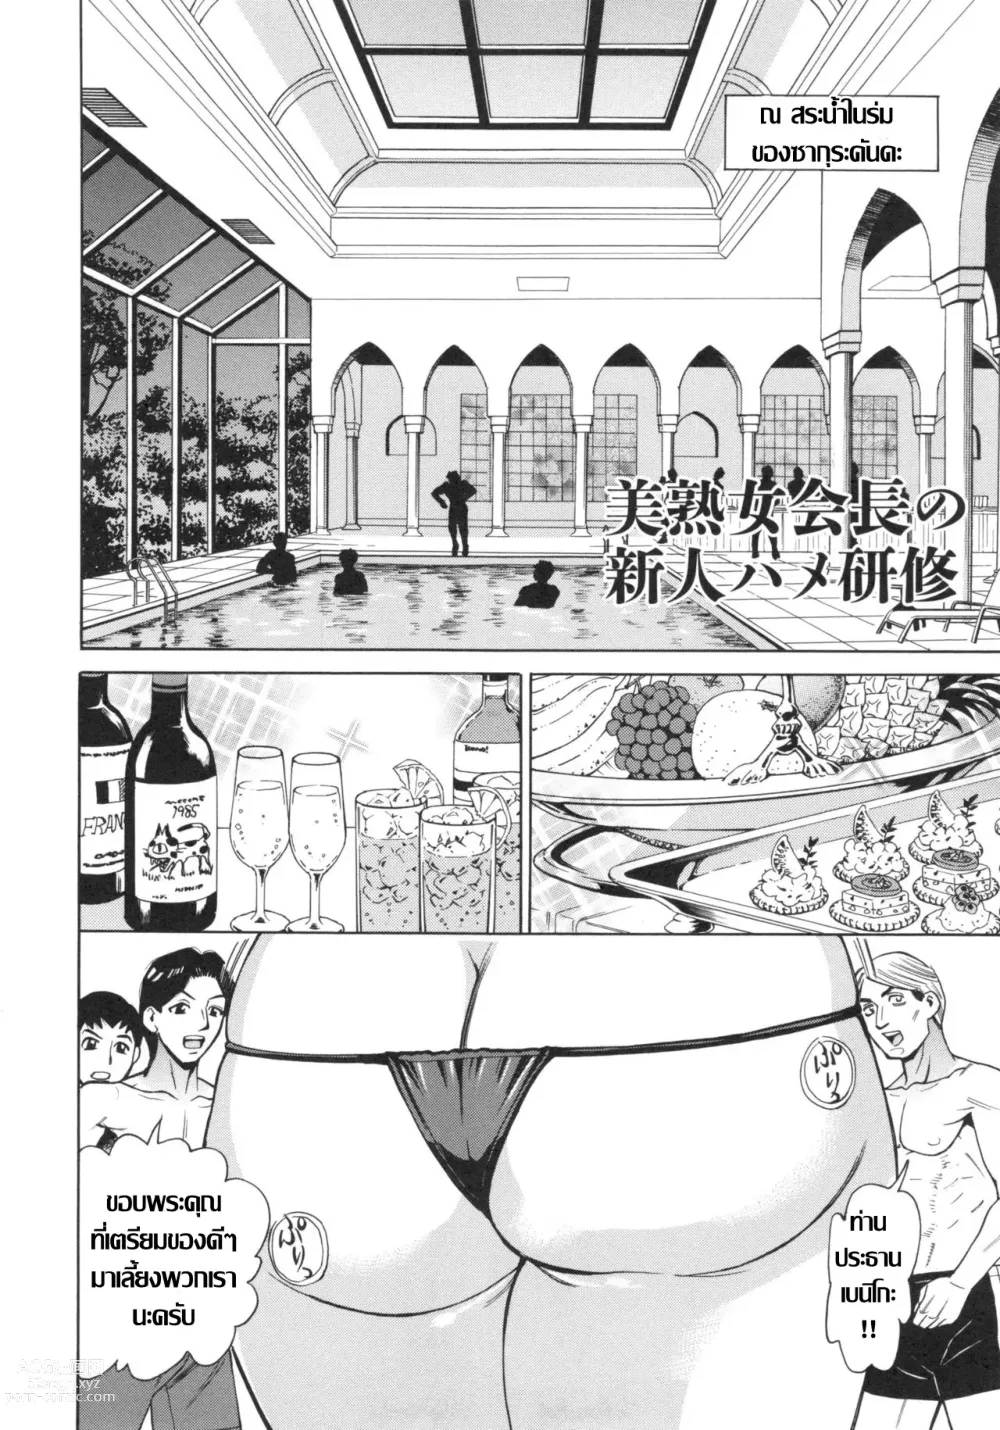 Page 2 of manga สาวใหญ่ผู้บริหาร กับการเทสงานเด็กใหม่